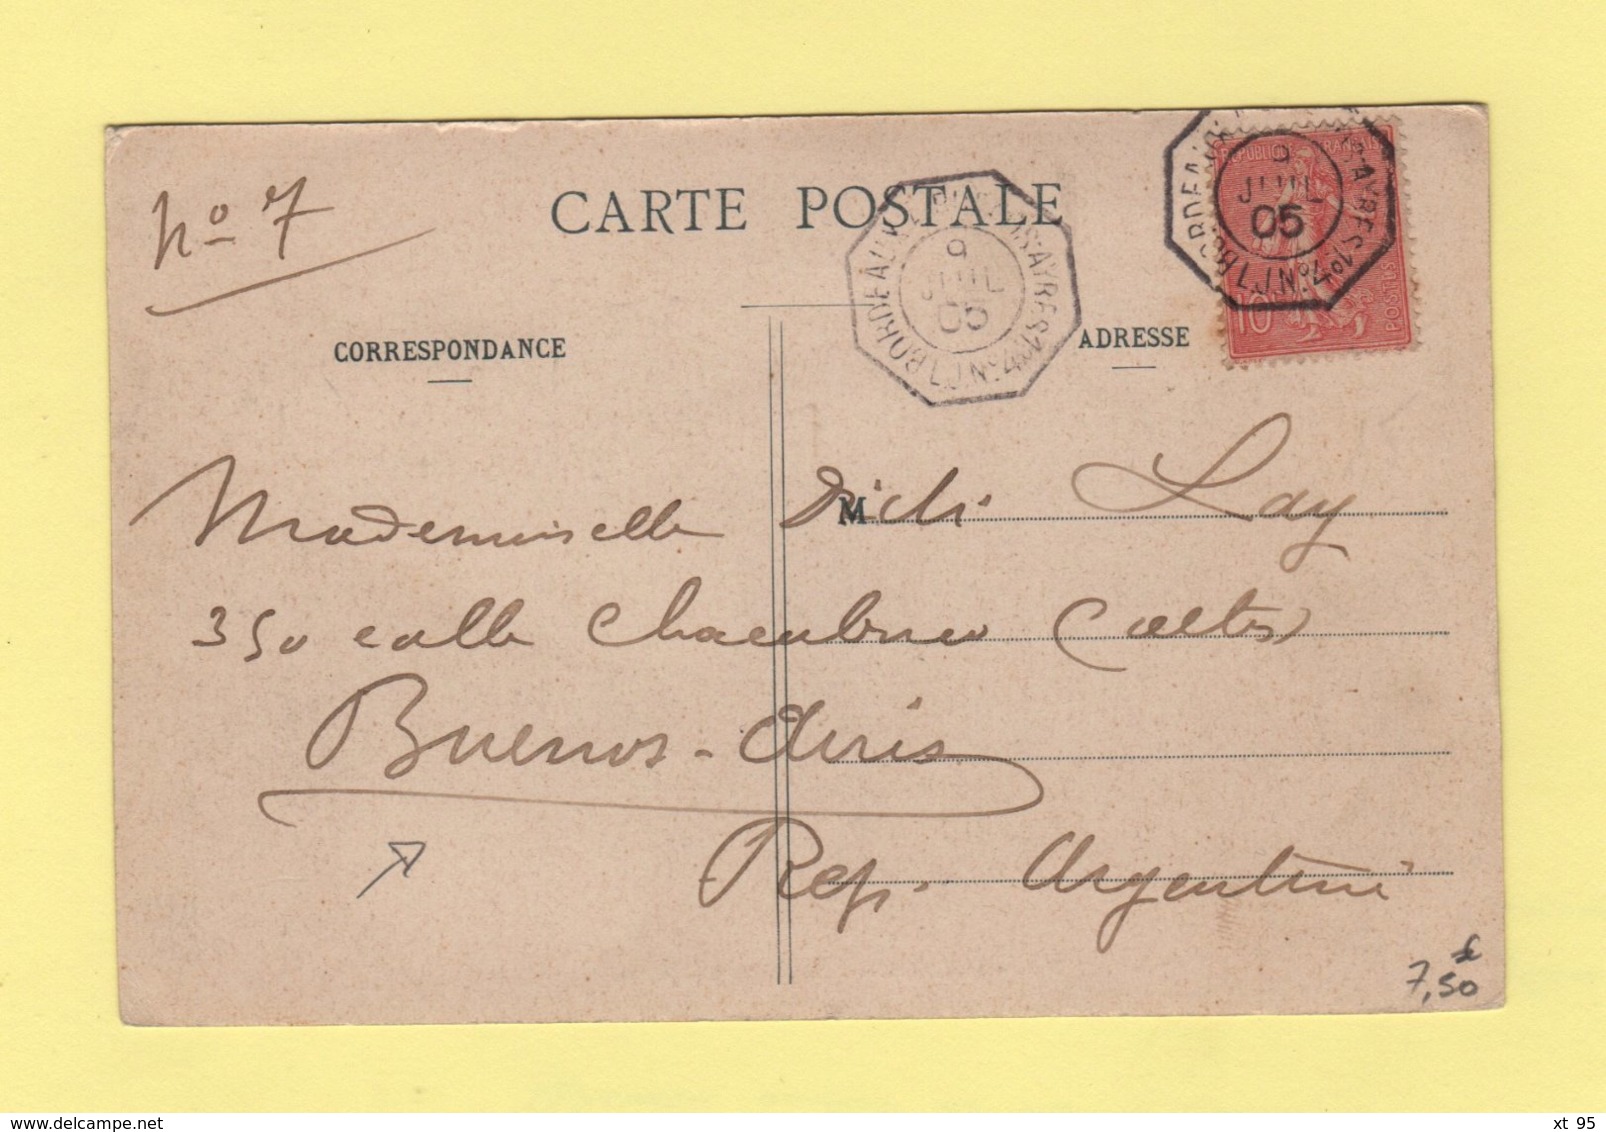 Bordeaux A Buenos Ayres - Ligne J N°4 - 9 Juil 1905 - Destination Argentine - Type Semeuse - Poste Maritime